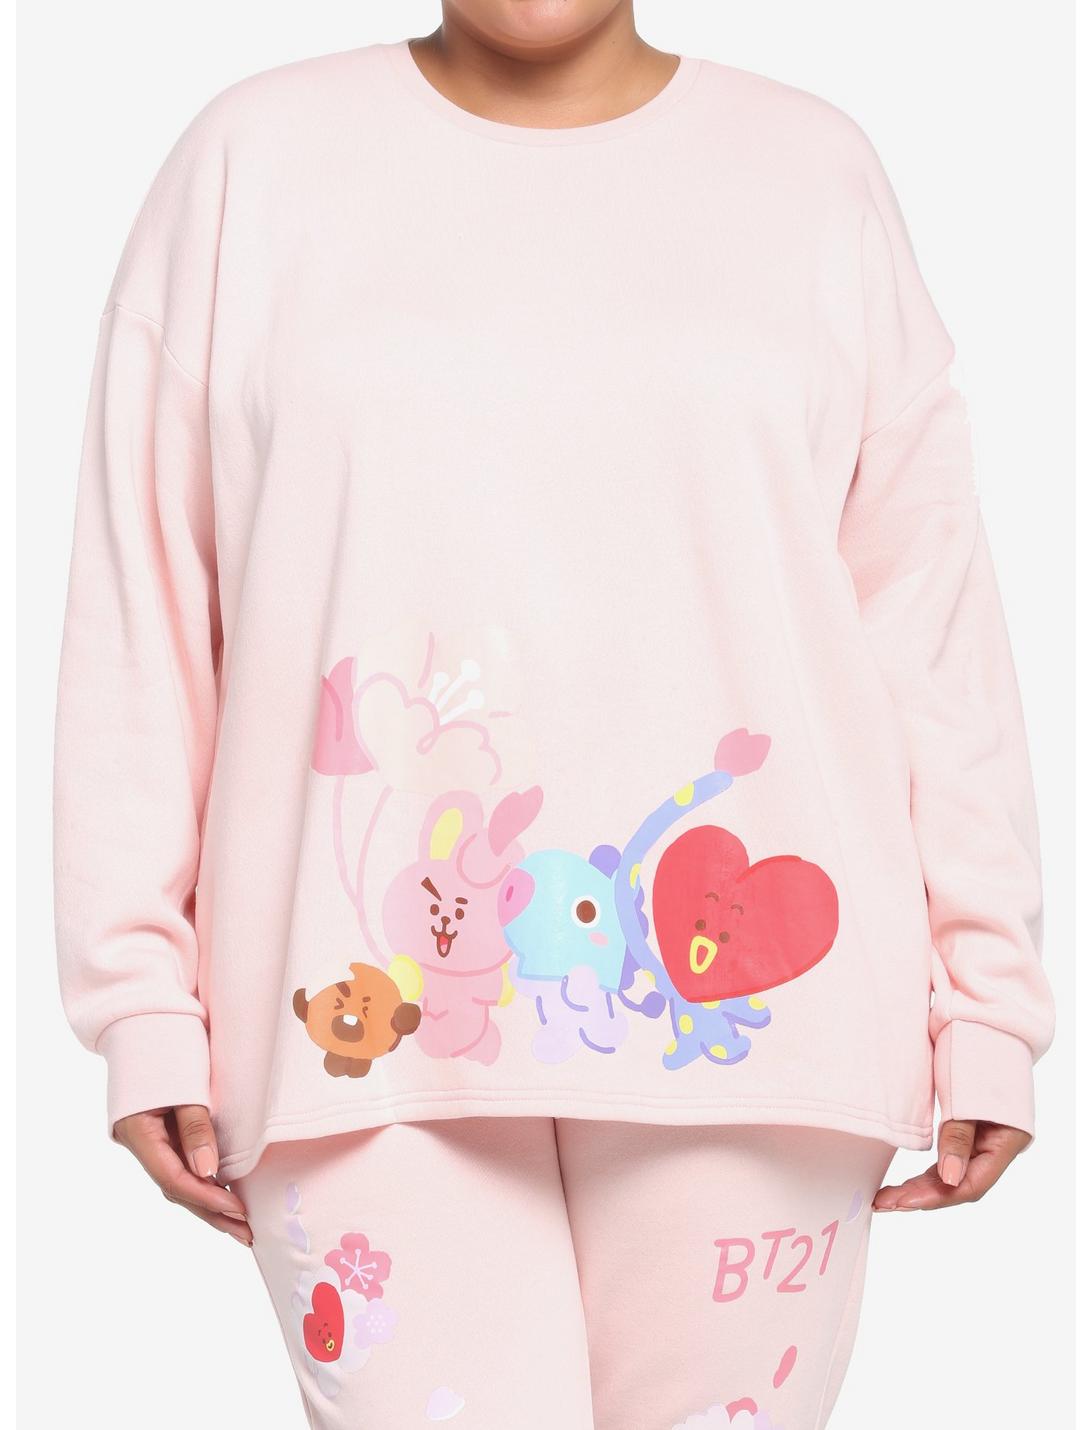 BT21 Cherry Blossom Girls Crop Sweatshirt Plus Size, PINK, hi-res